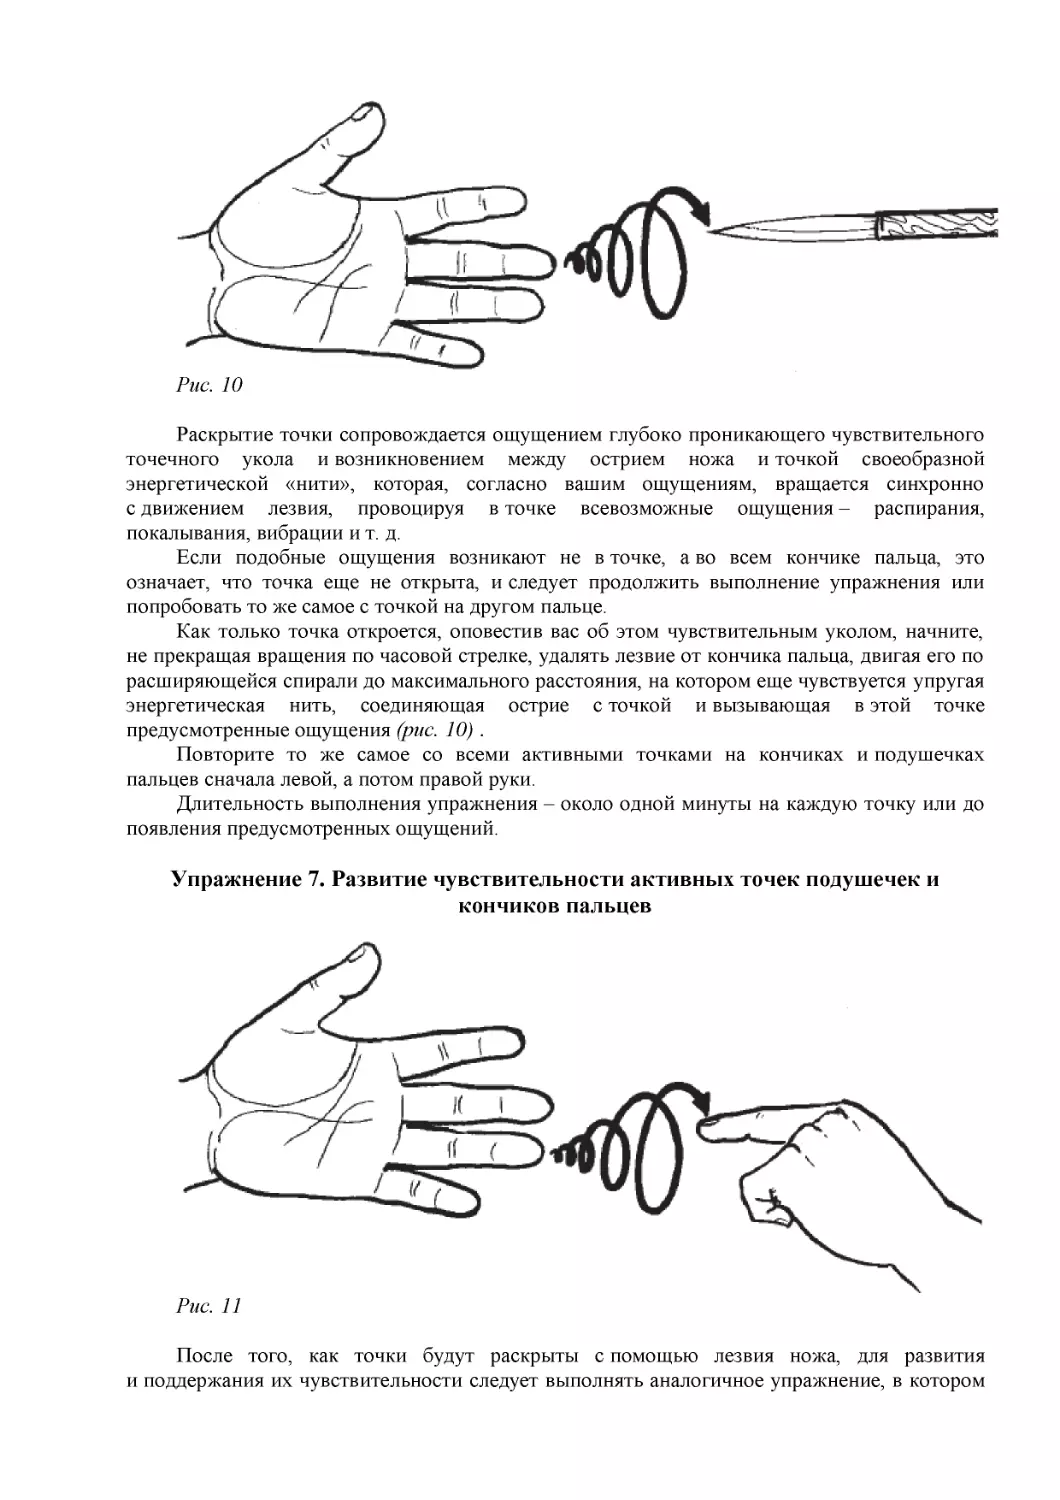 Упражнение 7. Развитие чувствительности активных точек подушечек и кончиков пальцев